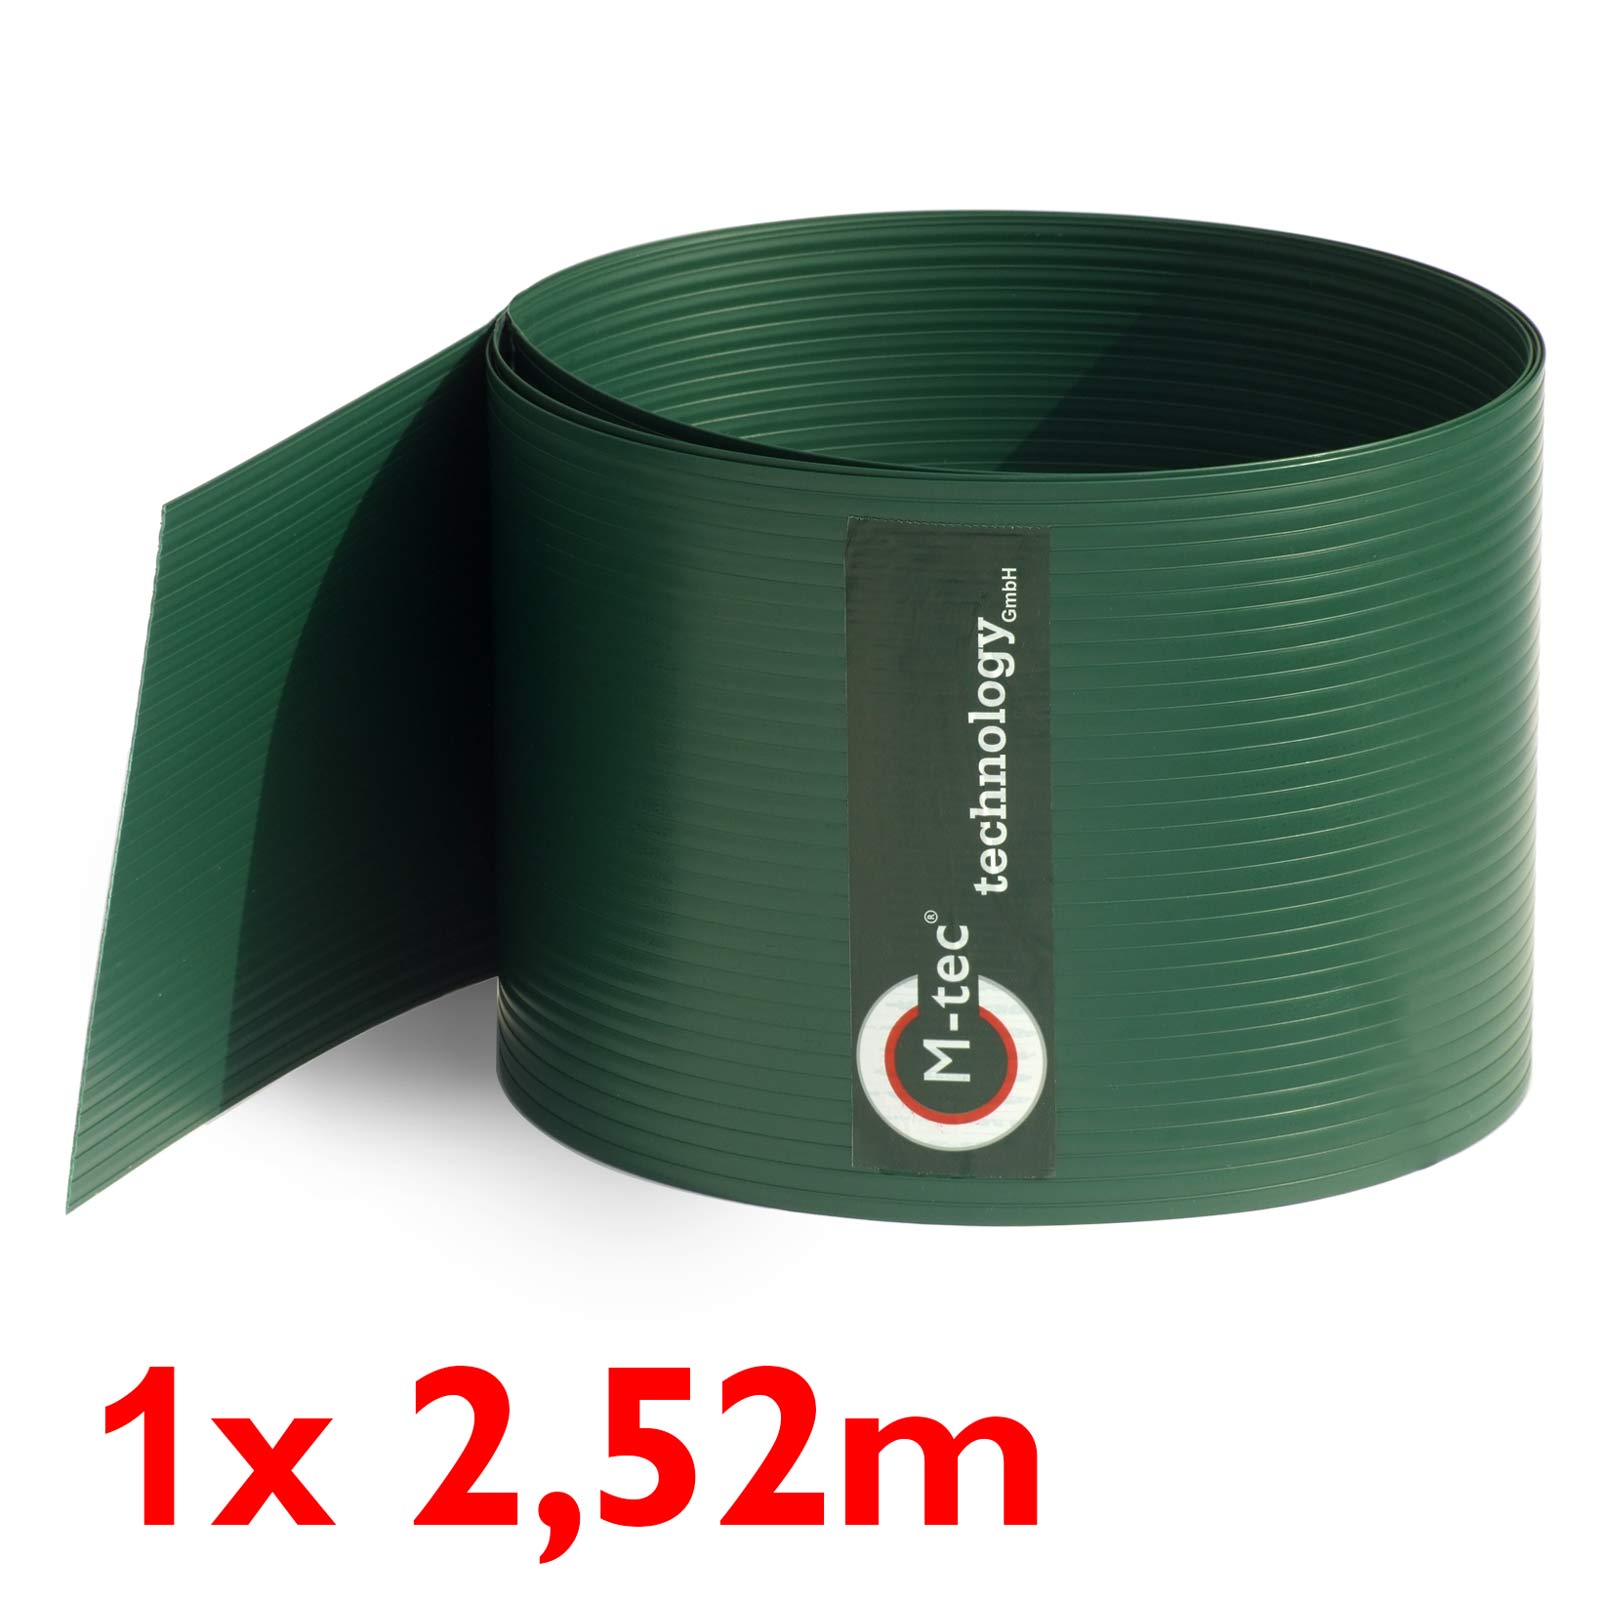 Sichtschutzstreifen Hart - PVC in grün | 19cm hoch